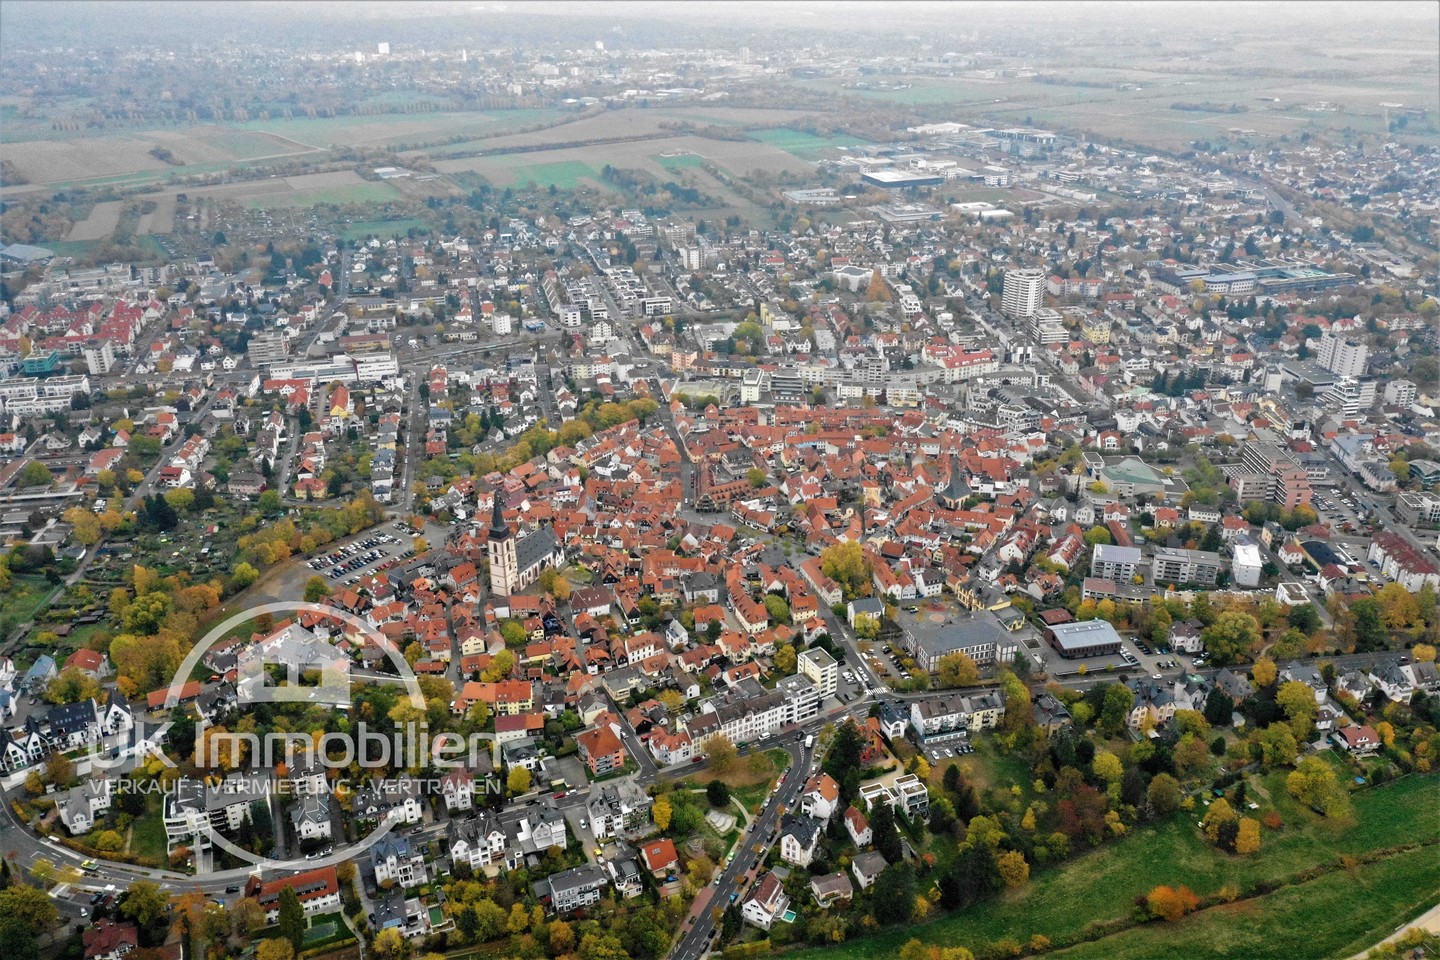 Immobilienmakler-Oberursel-Taunus-Luftaufnahme-der-Altstadt-KoenigsteinerStraße-Altkoenigstraße-An-der-Burg-Schulstraße-St-Ursula-Obergasse.jpg